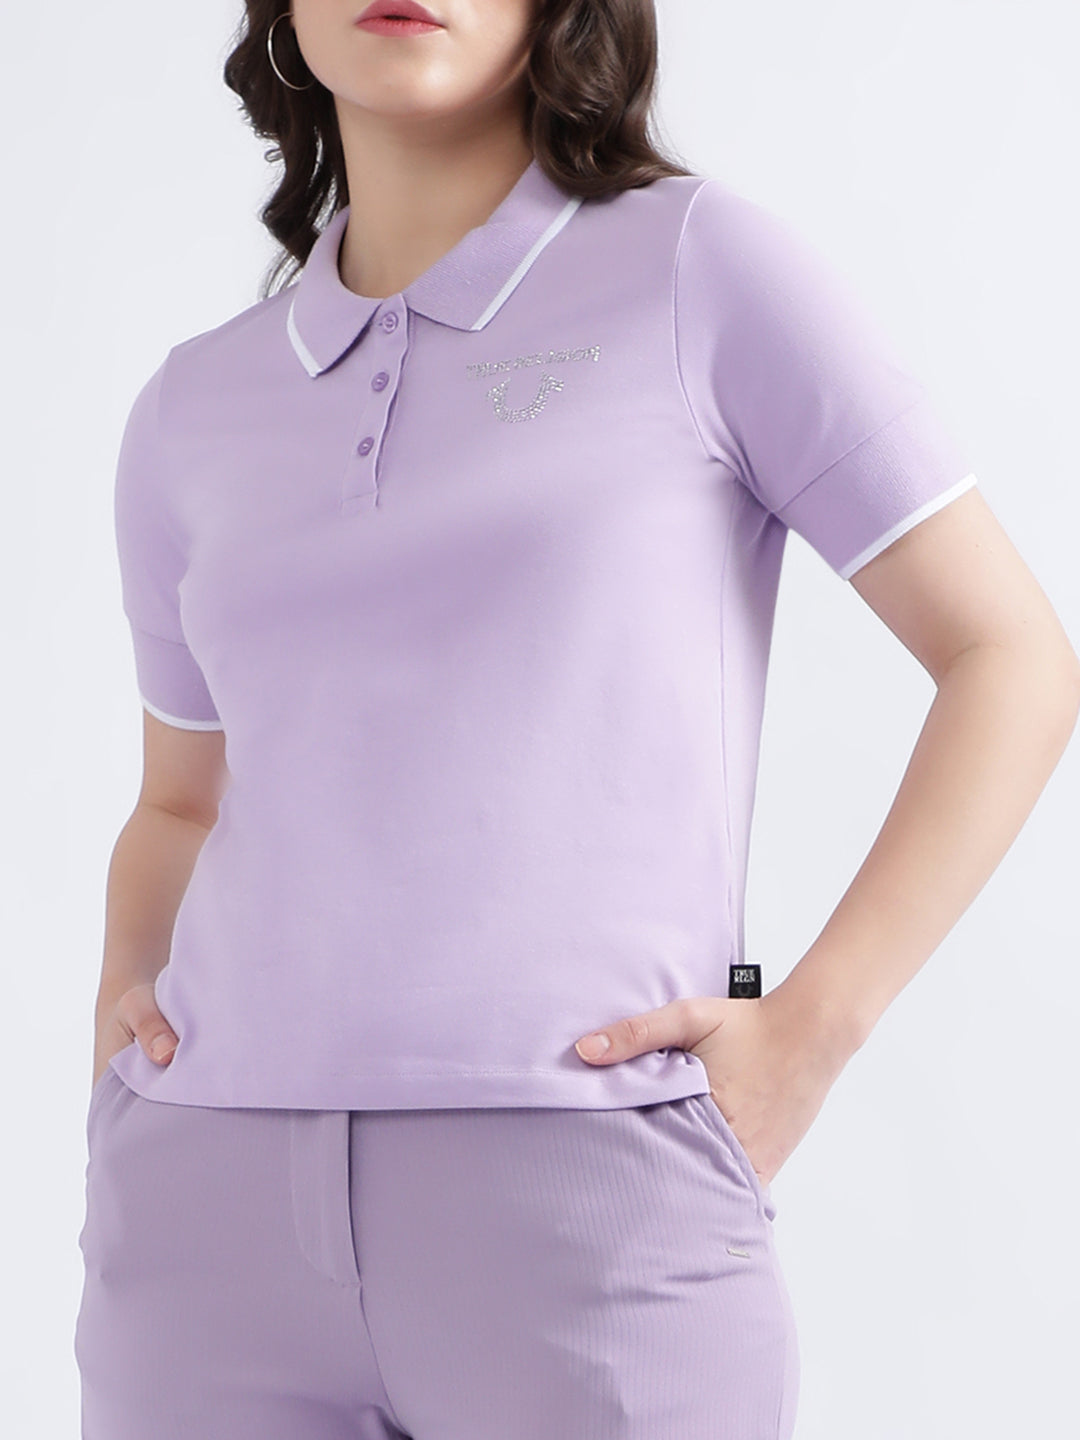 True Religion Women Lilac Solid Polo TShirt